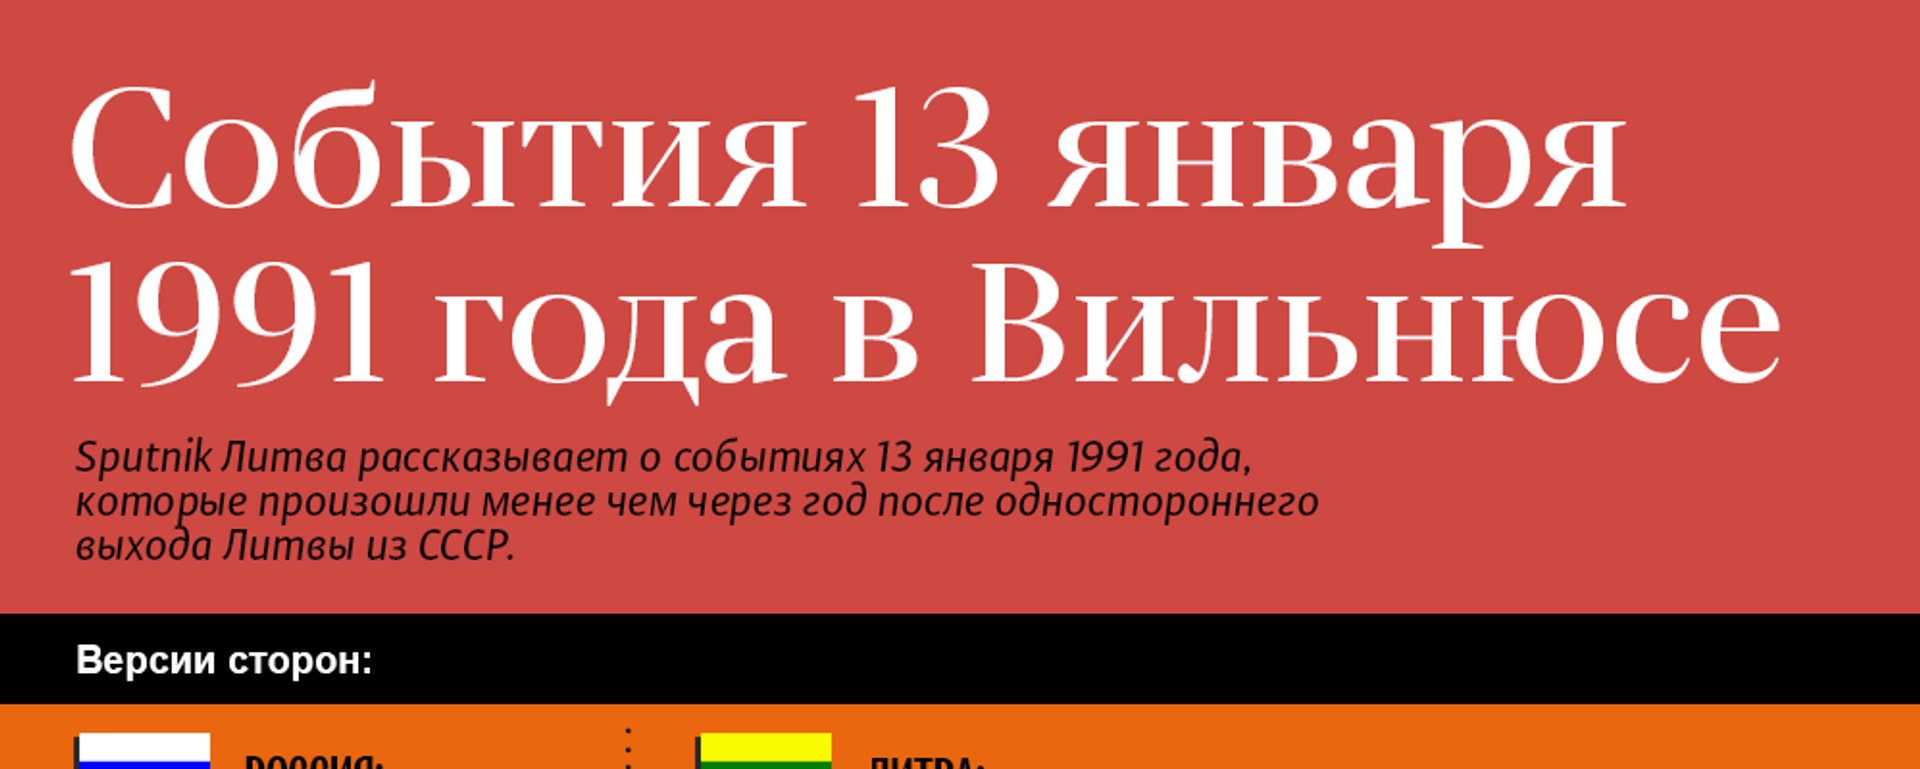 События 13 января 1991 года в Вильнюсе - Sputnik Литва, 1920, 13.01.2021